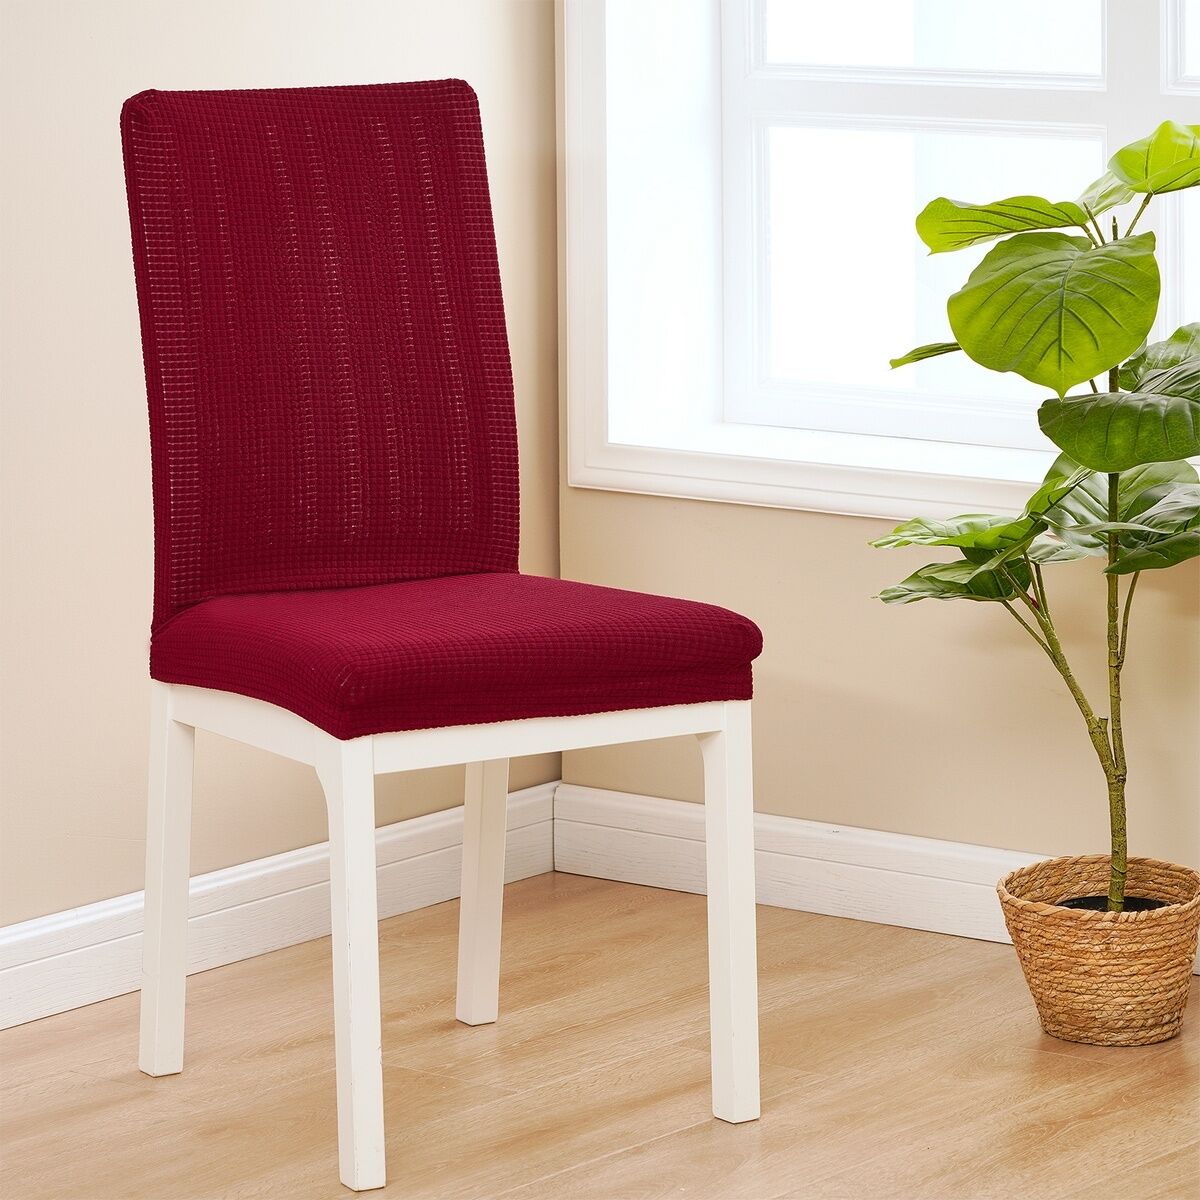 4Home Elastyczny wodoodporny pokrowiec na krzesłoMagic clean czerwony, 45 - 50 cm, zestaw 2 szt.